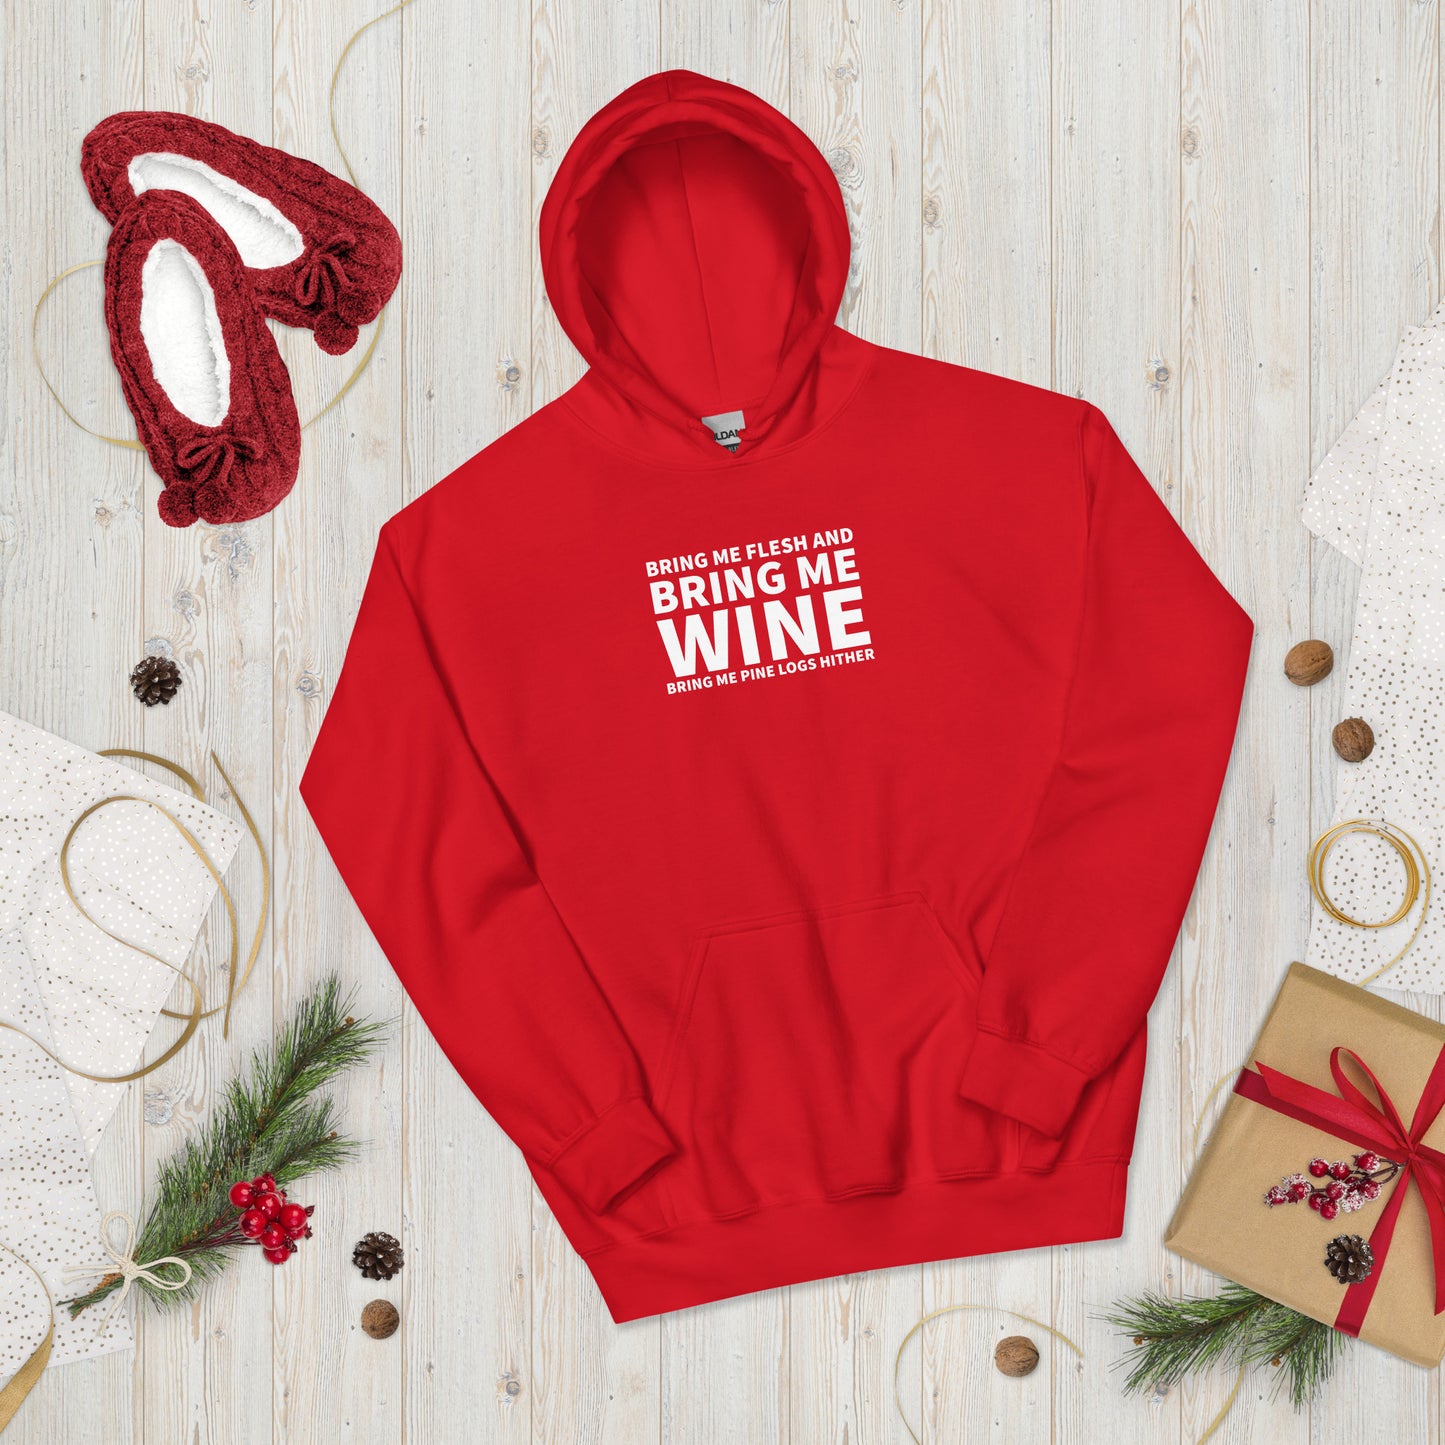 Bring me wine - Christmas Unisex Hoodie